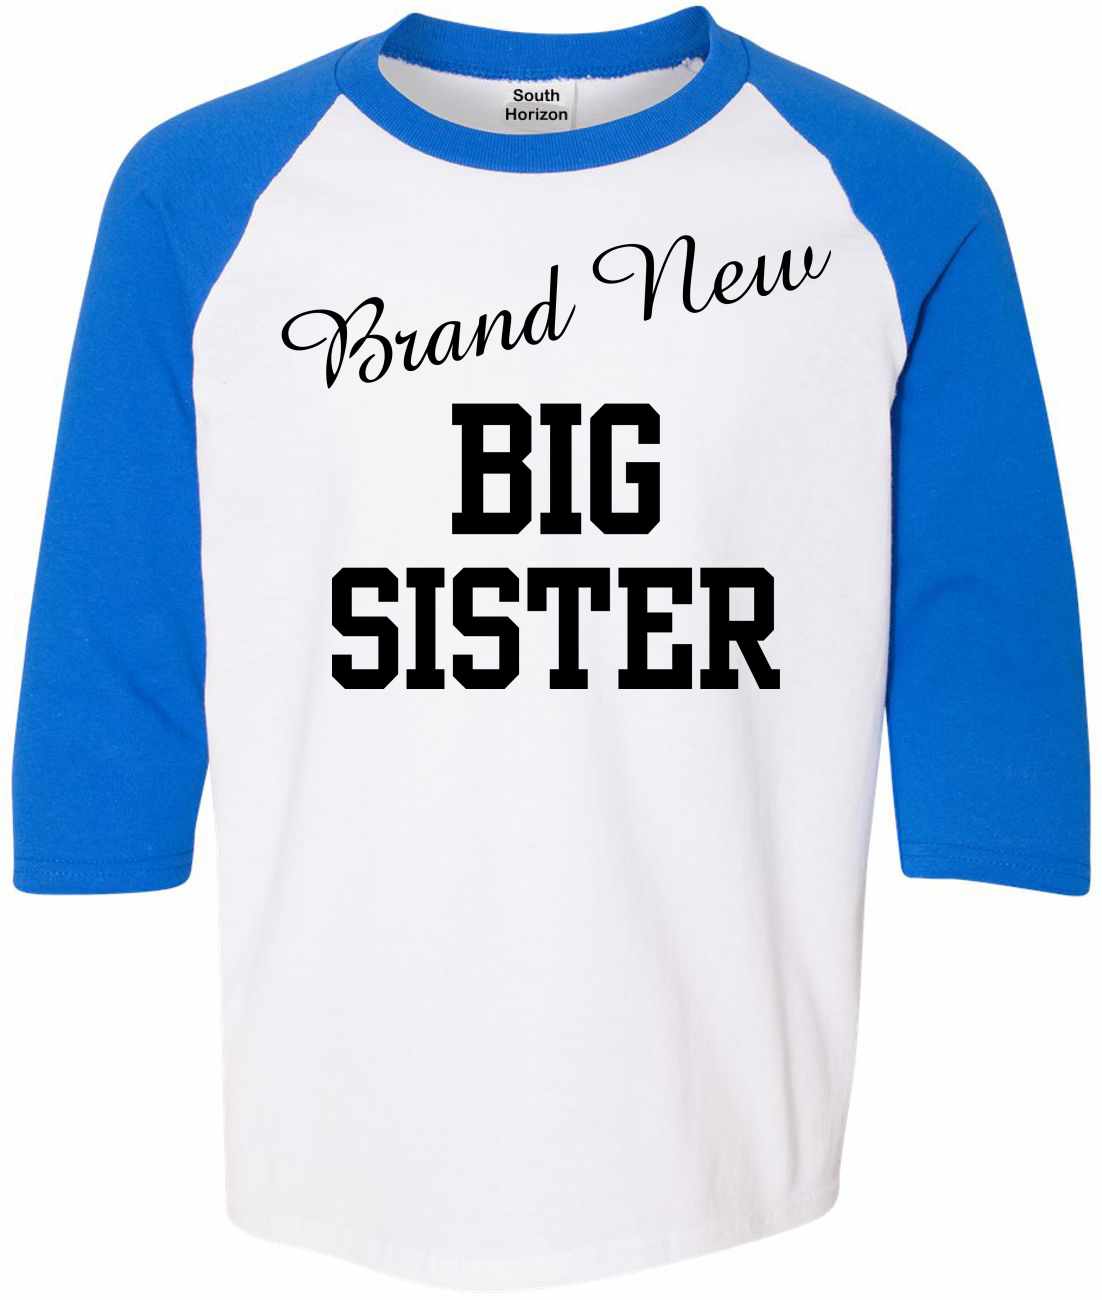 Brand New Big Sister on Youth Baseball Shirt